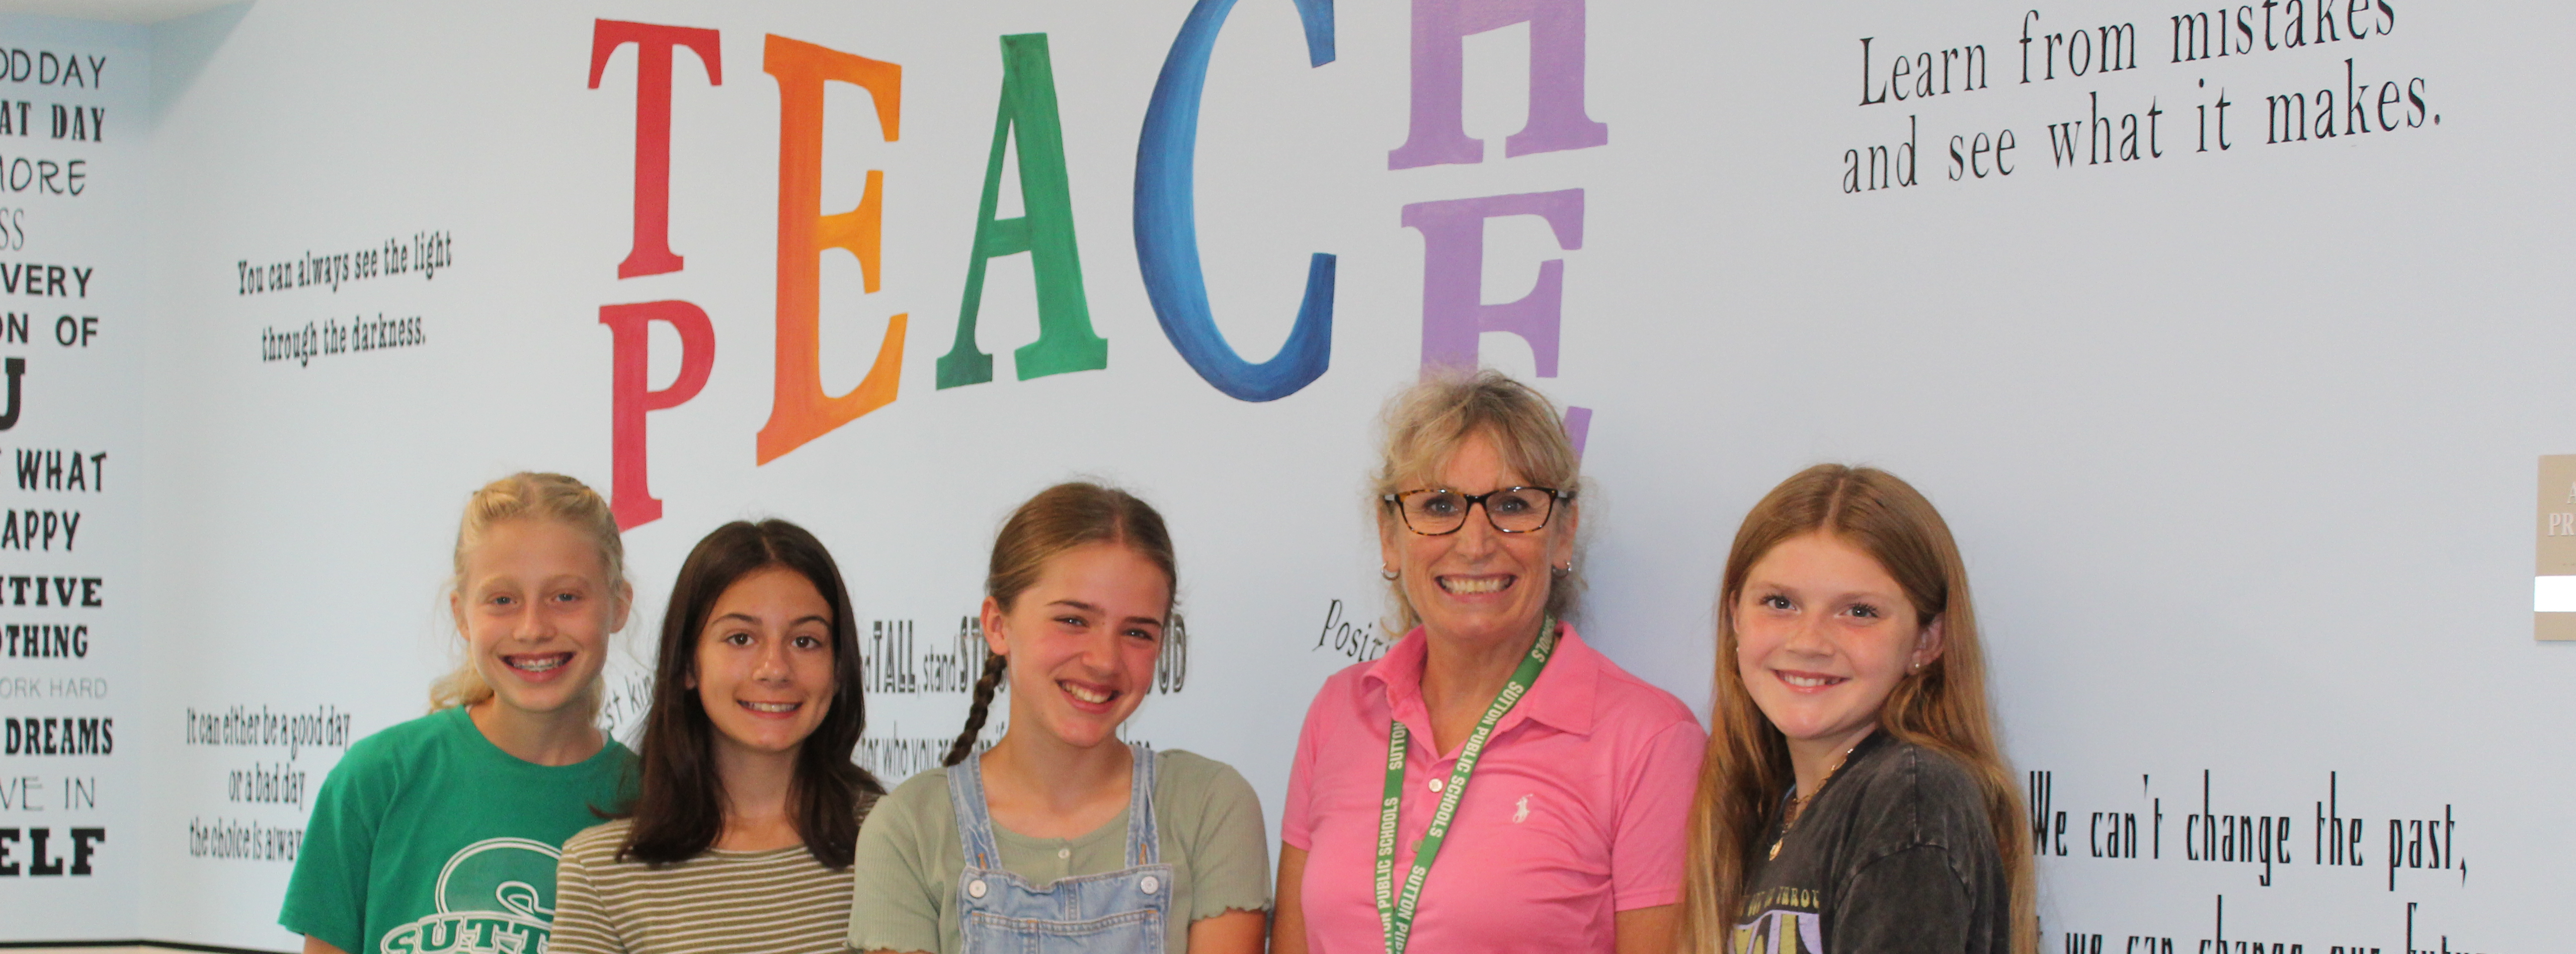 Teachers with sign, Teach Peace